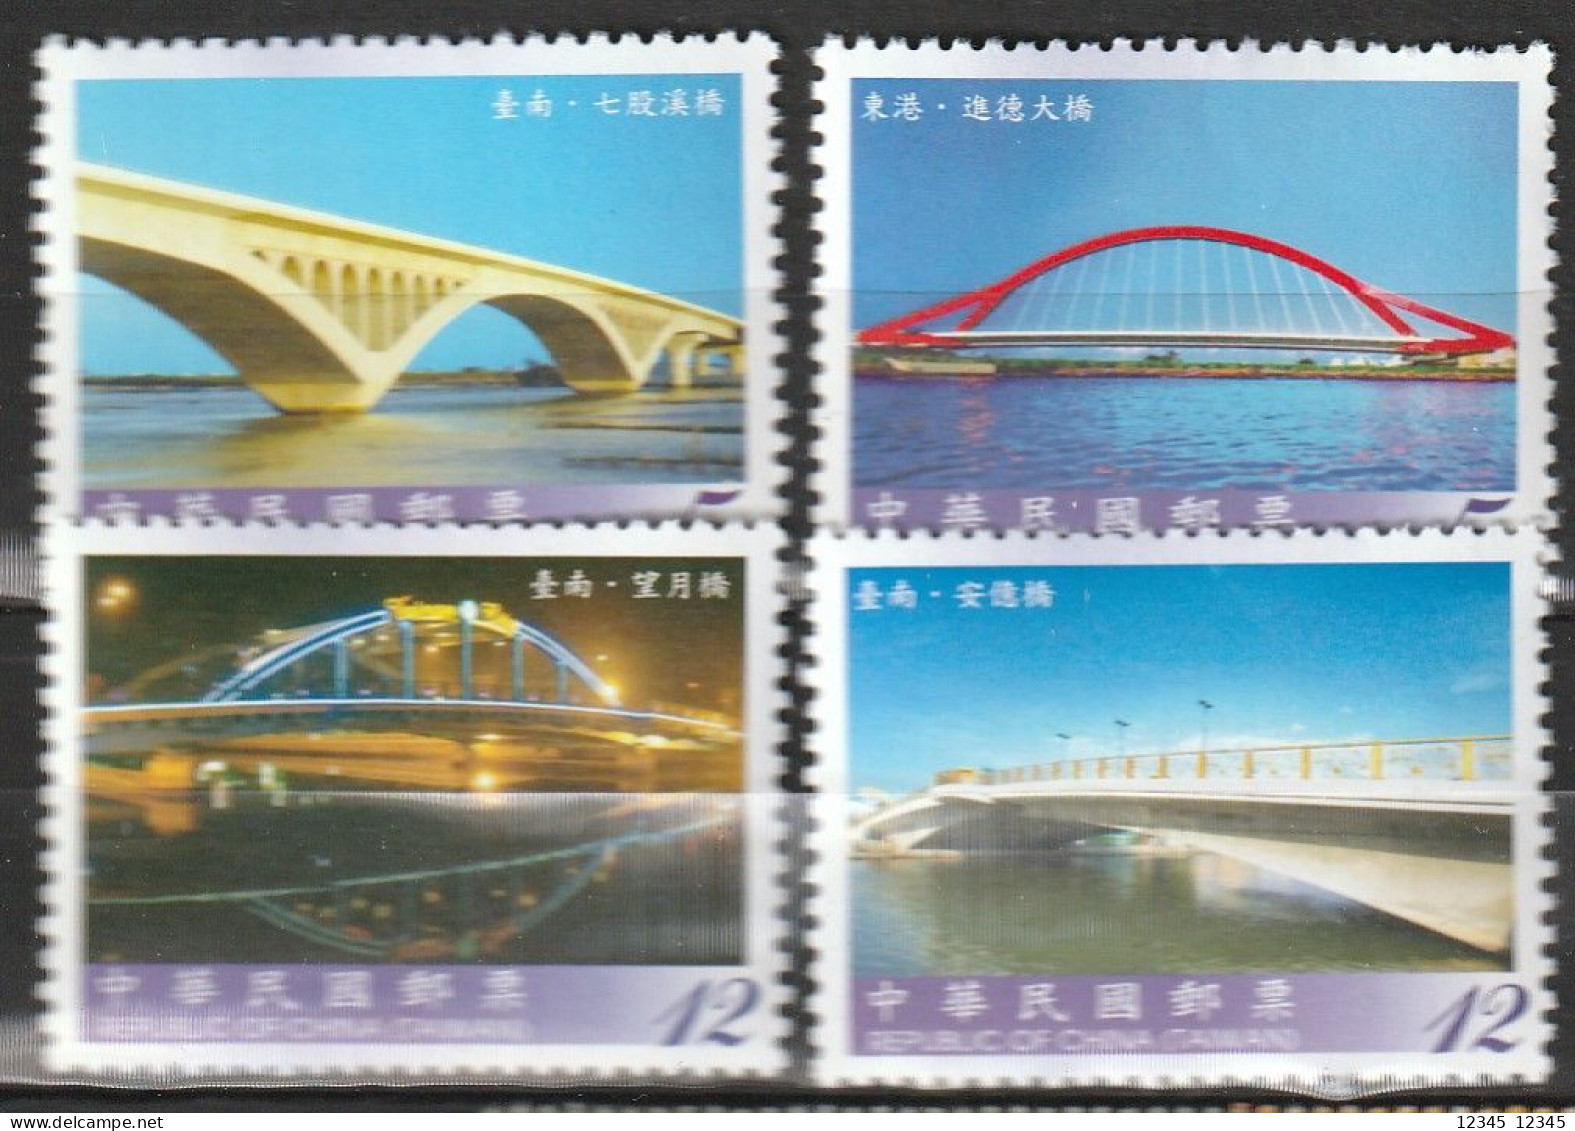 Taiwan 2010, Postfris MNH, Bridges - Unused Stamps